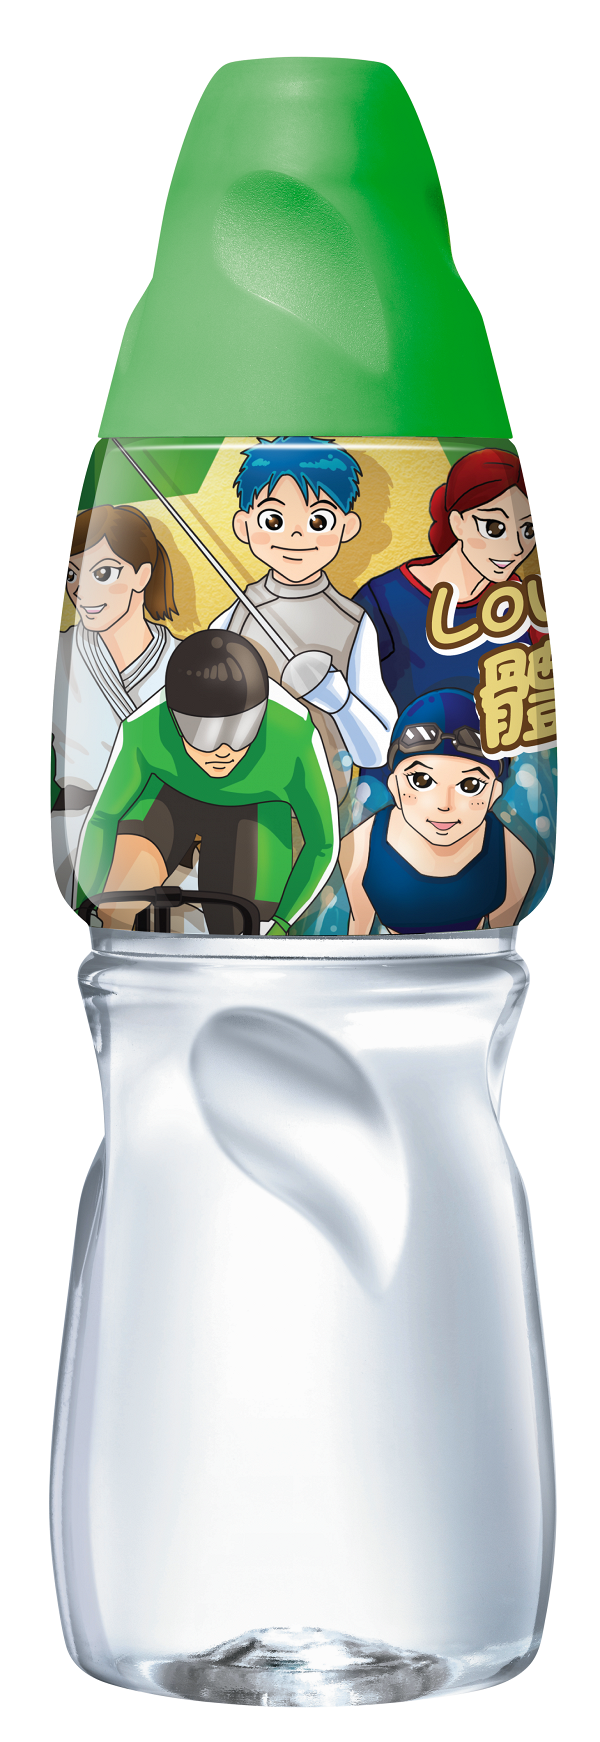 東京奧運港隊特別版蒸餾水 每支捐$1支持殘疾人運動